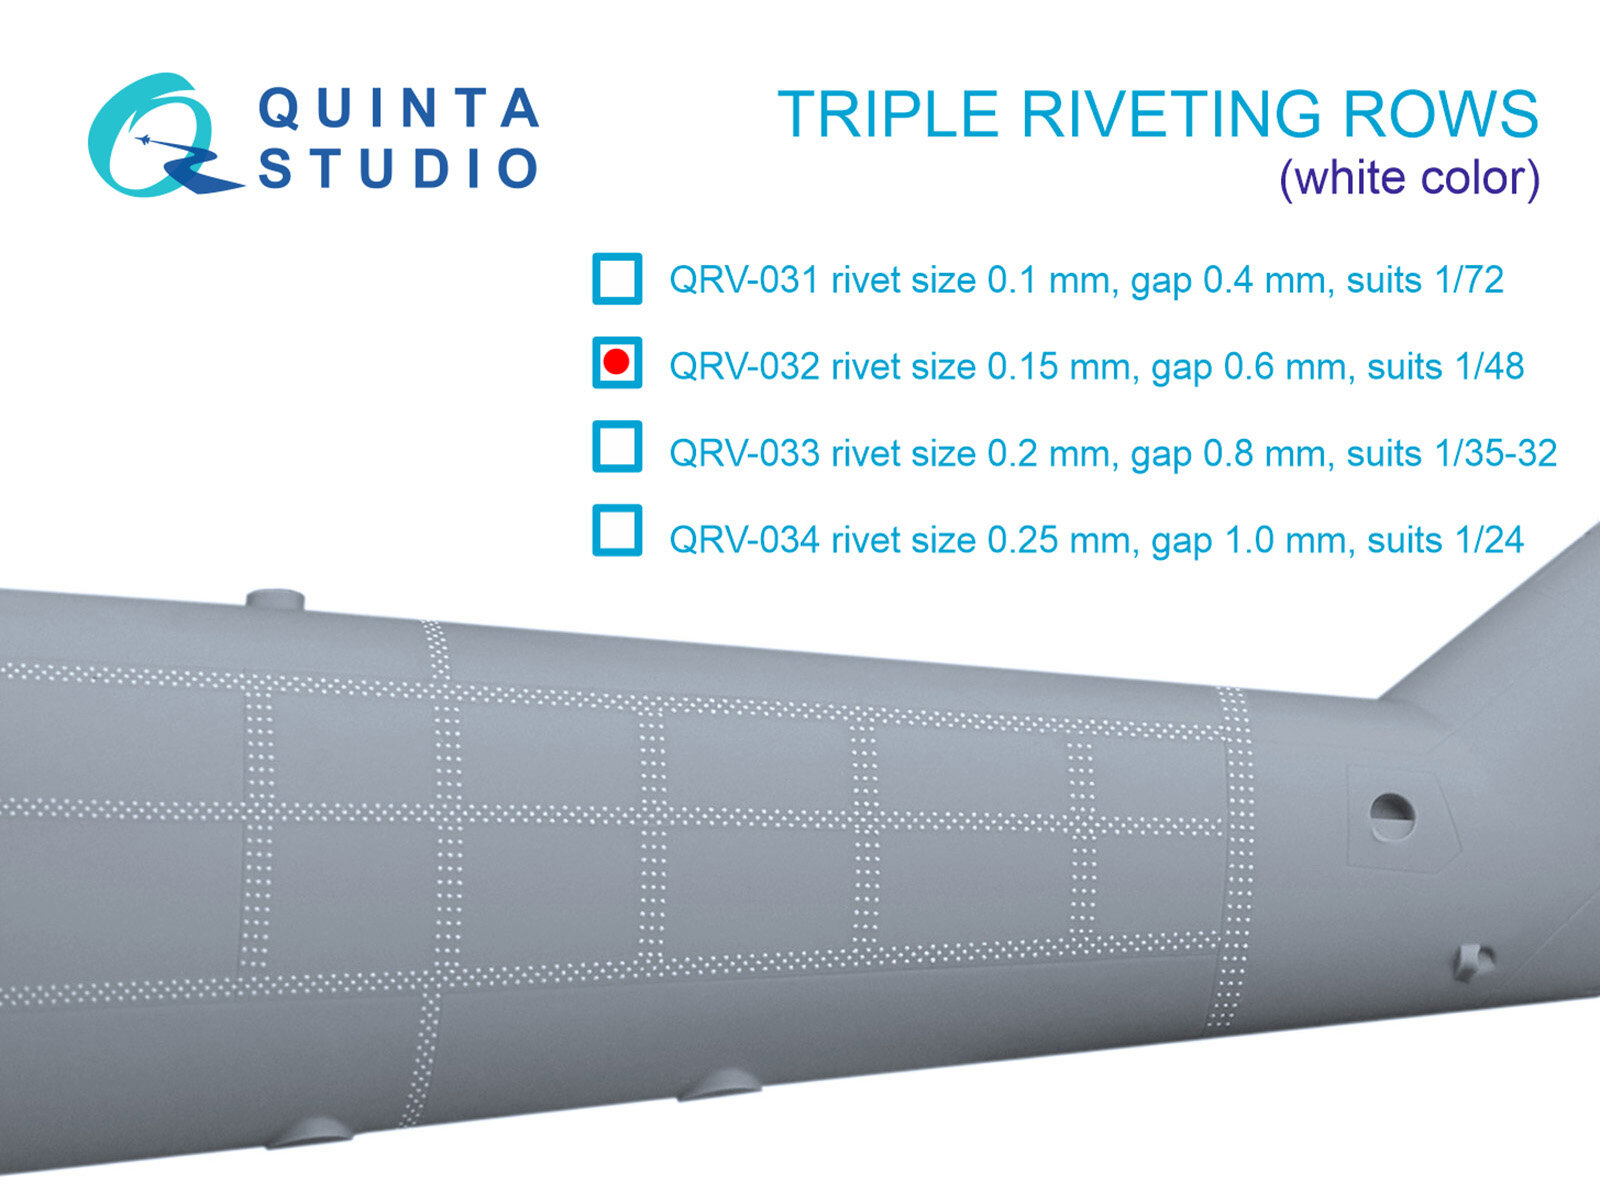 QRV-032 Тройные клепочные ряды (размер клепки 0.15 mm, интервал 0.6 mm, масштаб 1/48), белые, общая длина 4.4